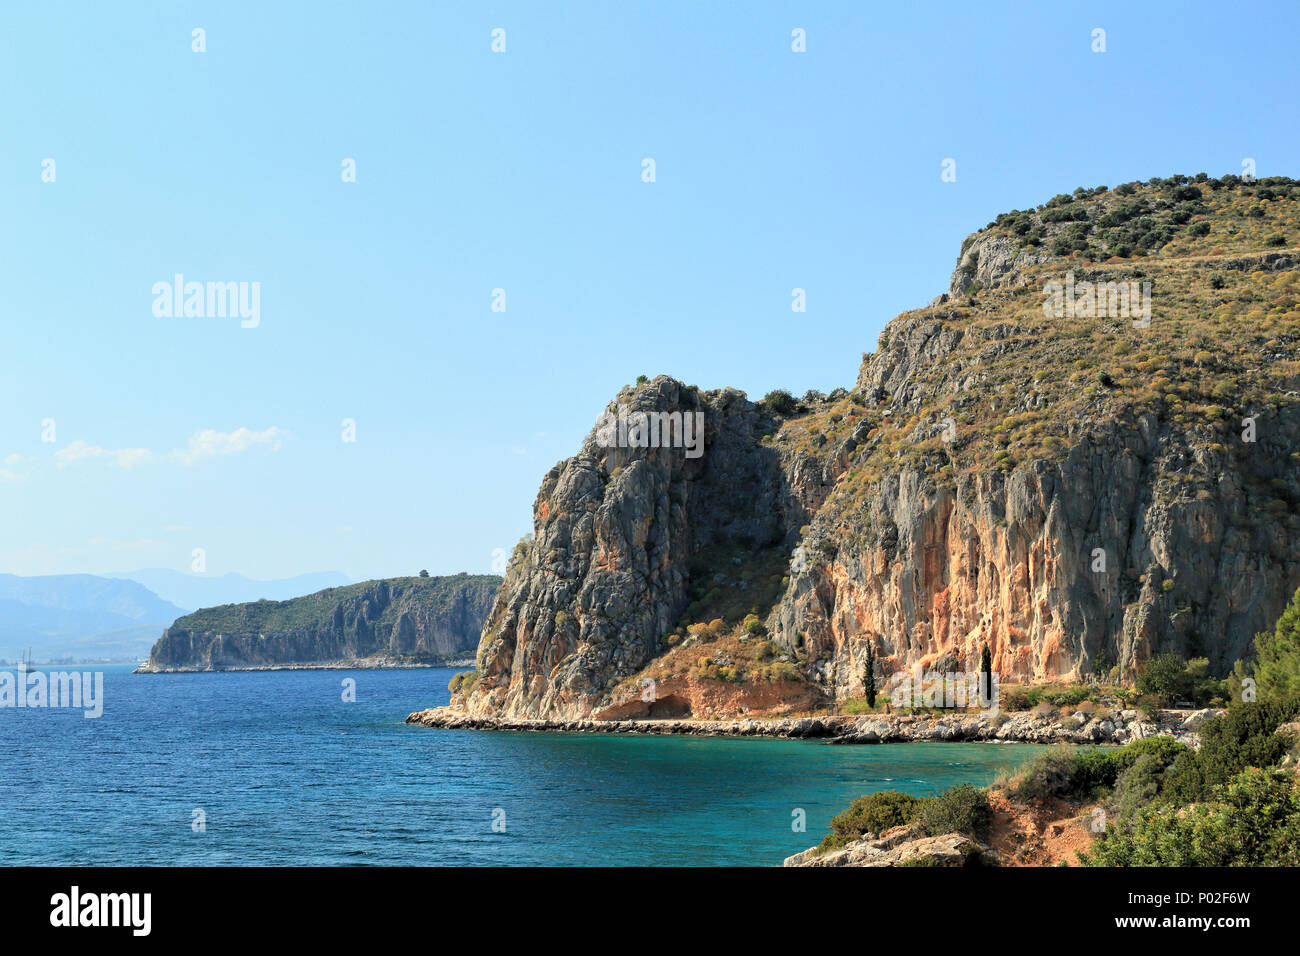 Coastal cliff climbing mountain, Greece Stock Photo